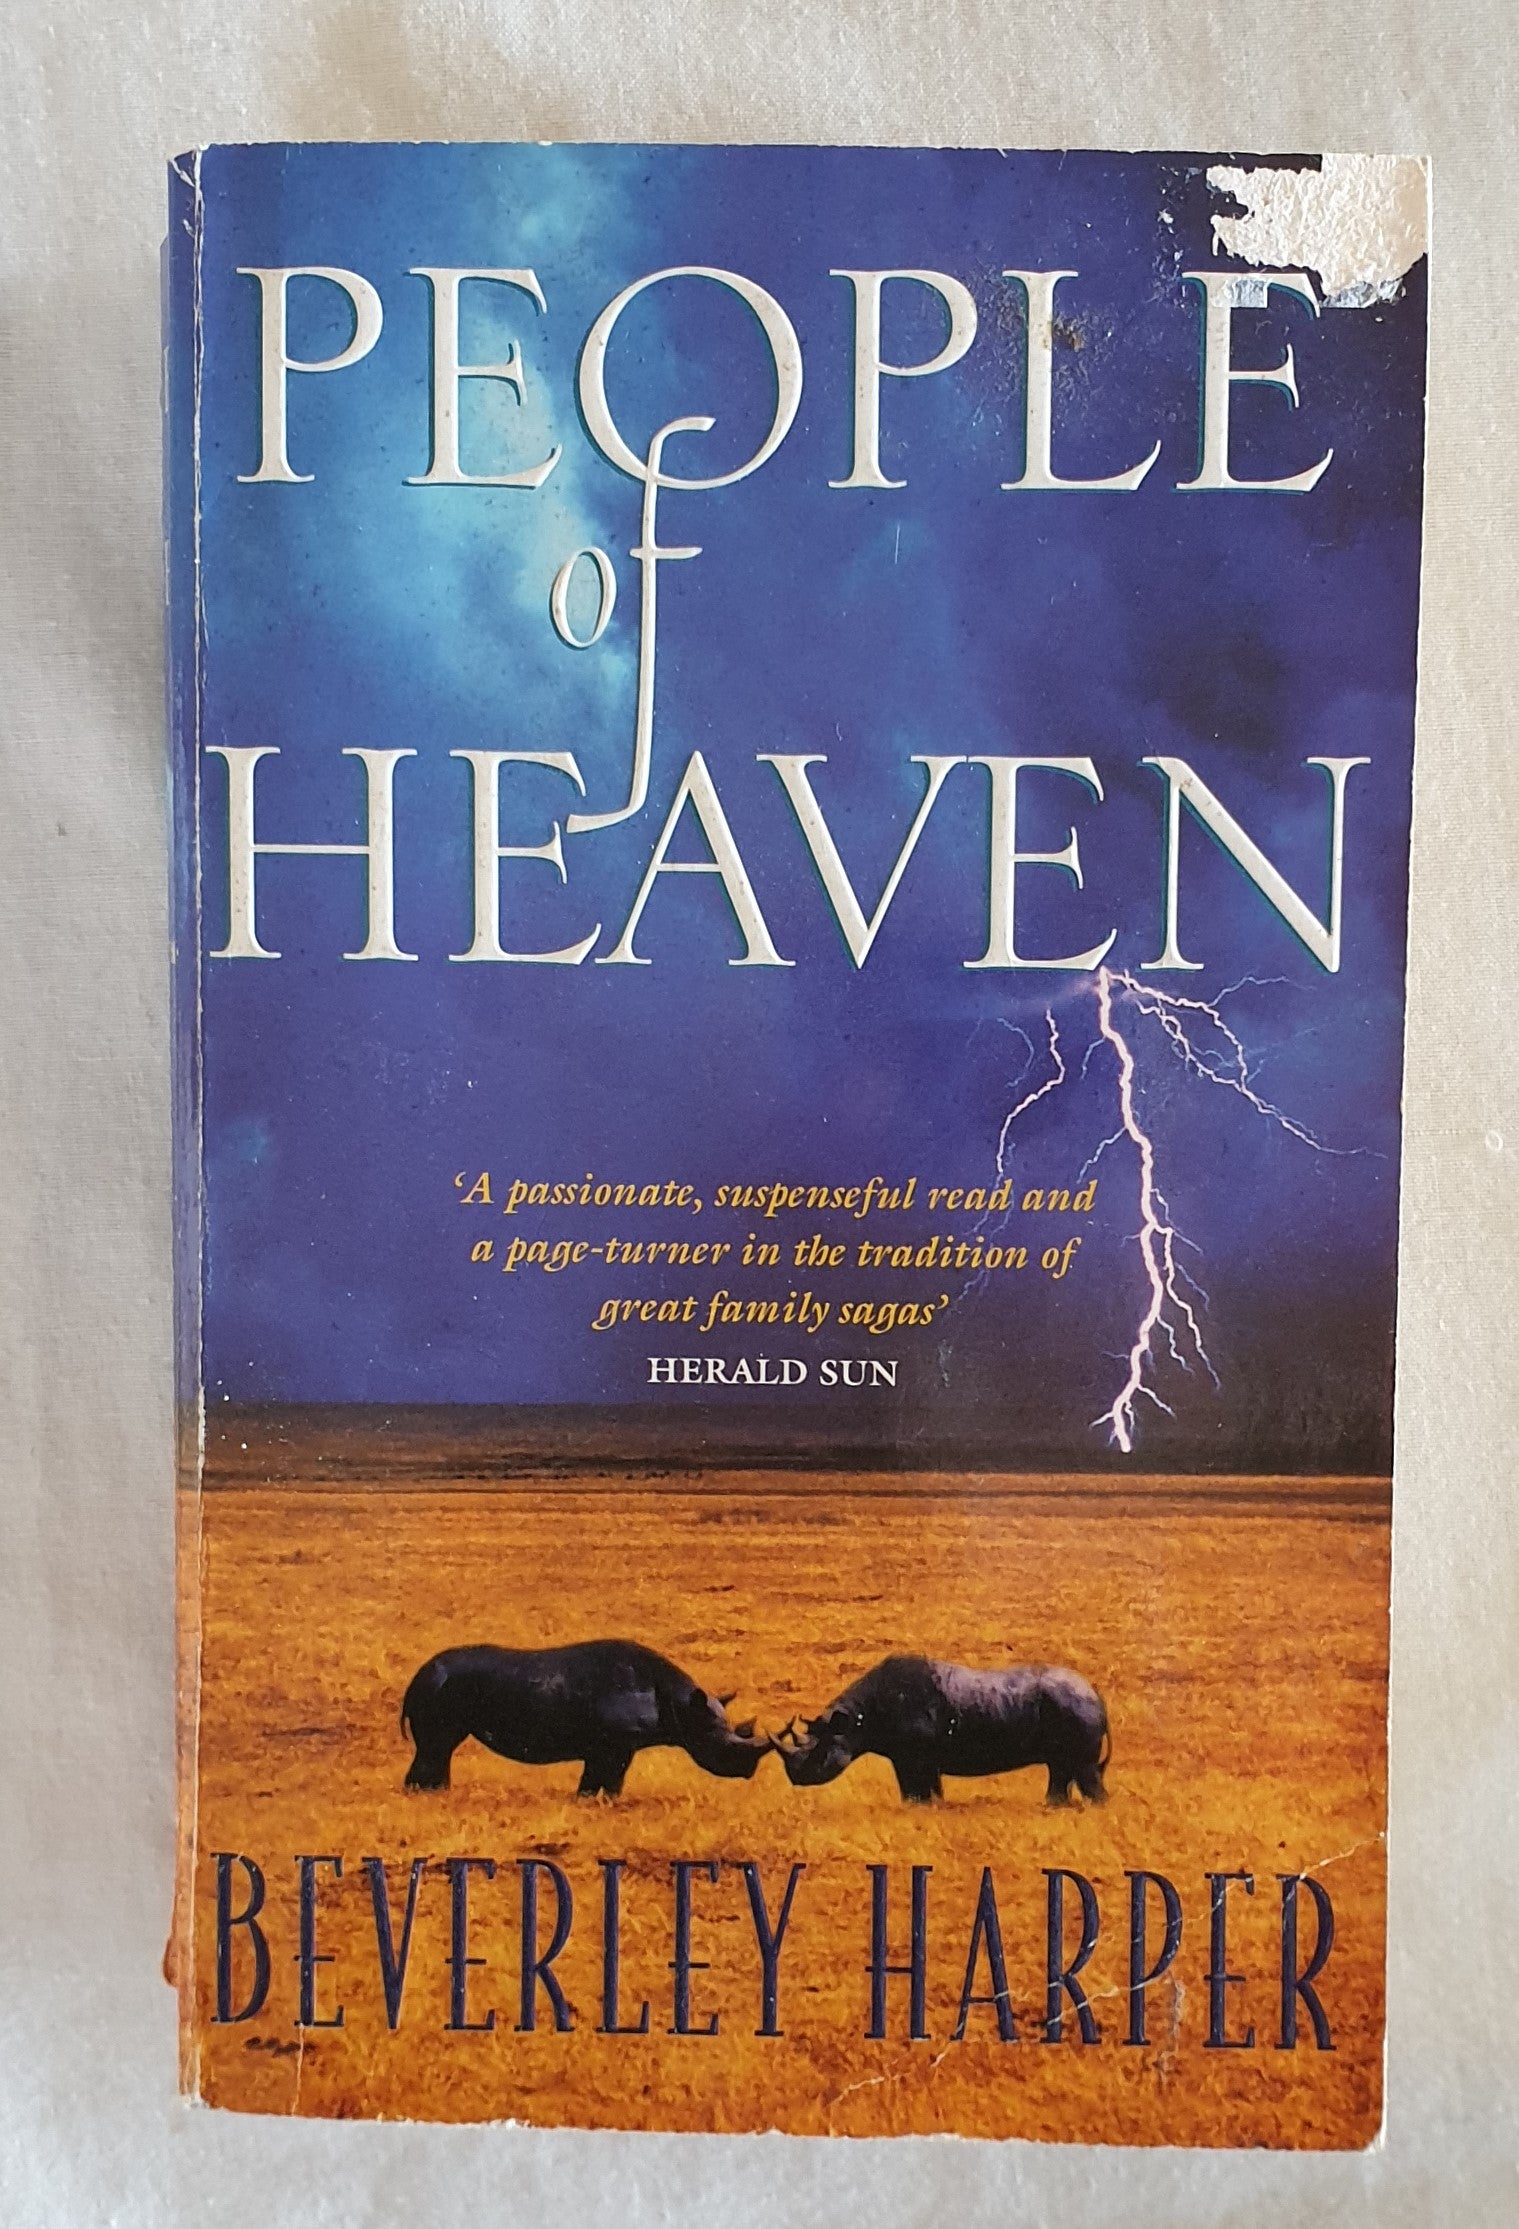 People of Heaven by Beverley Harper